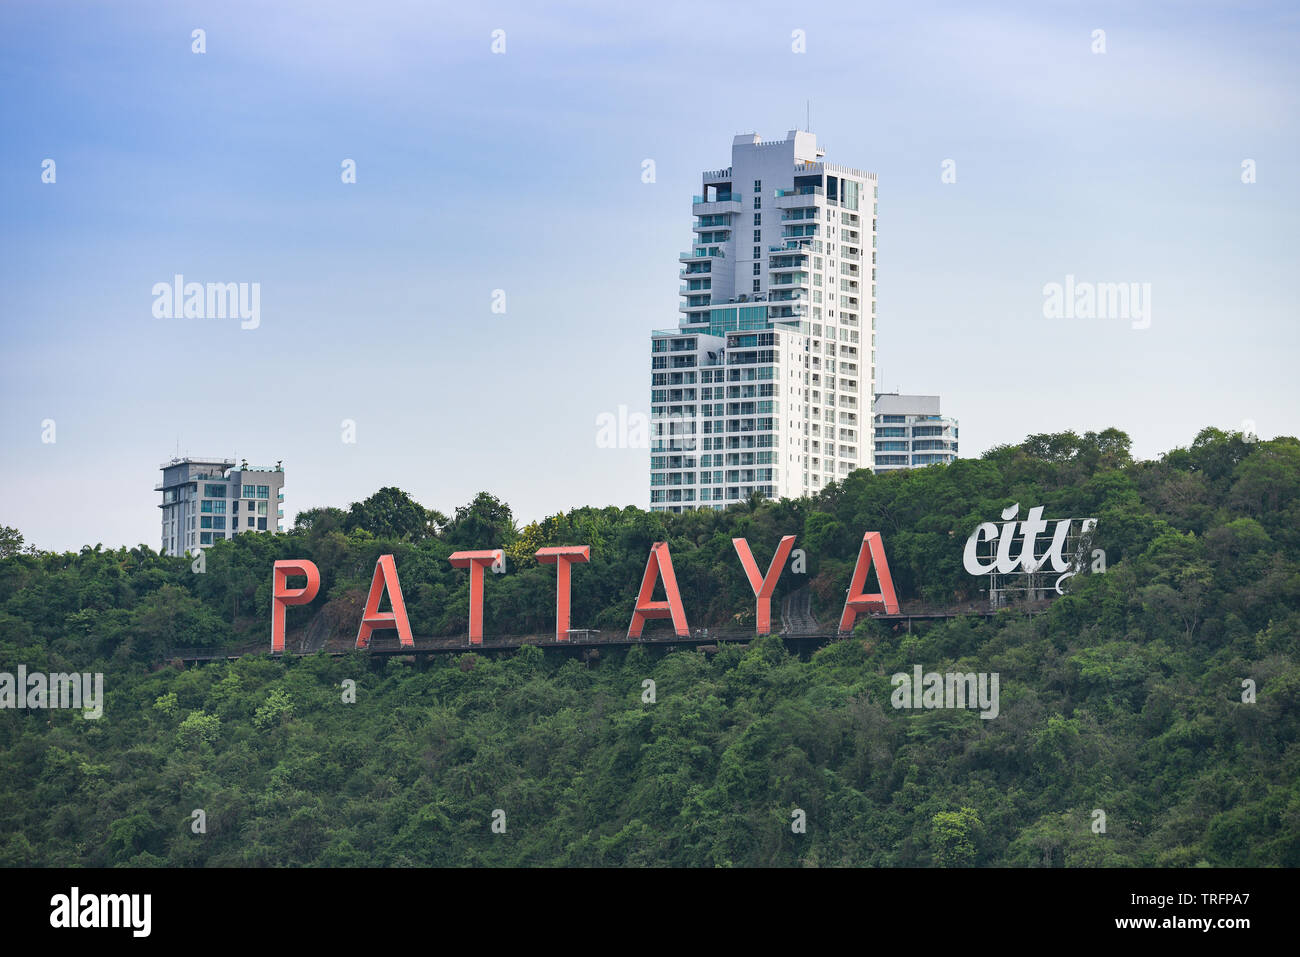 La ville de Pattaya signe sur colline près de Pattaya Beach Vue aérienne de Chonburi Thailande Banque D'Images